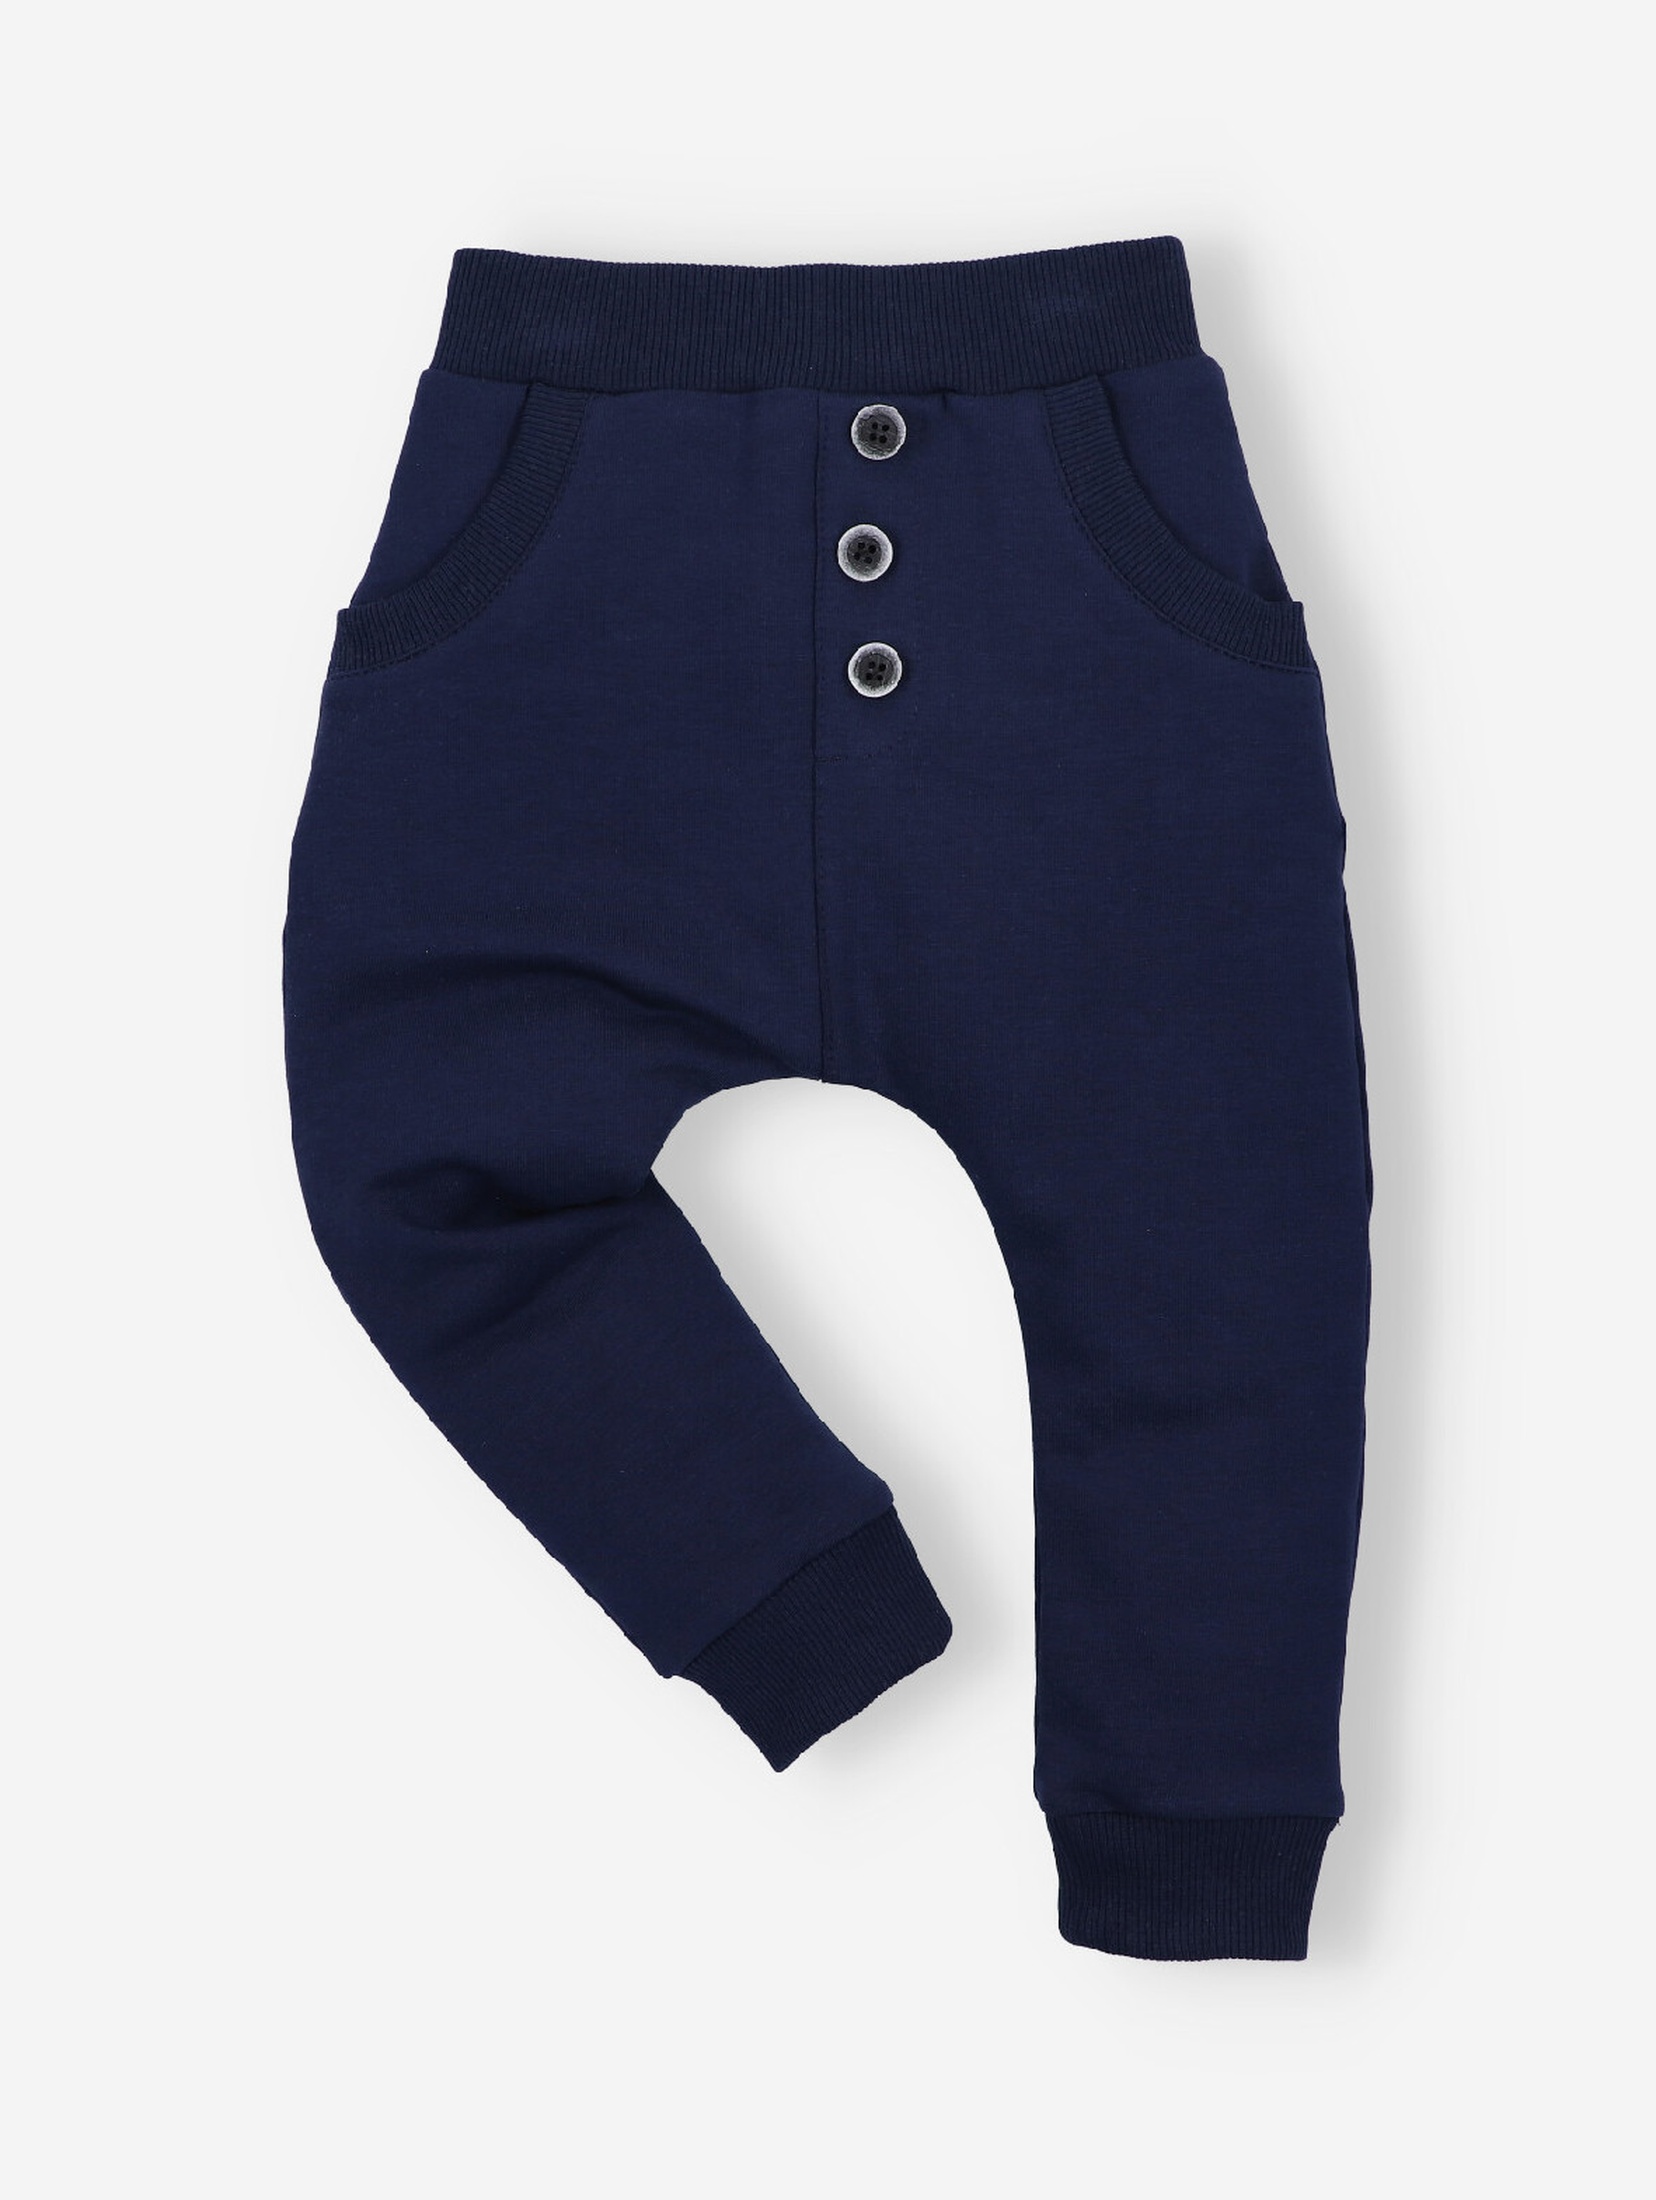 Granatowe spodnie niemowlęce z bawełny organicznej dla chłopca